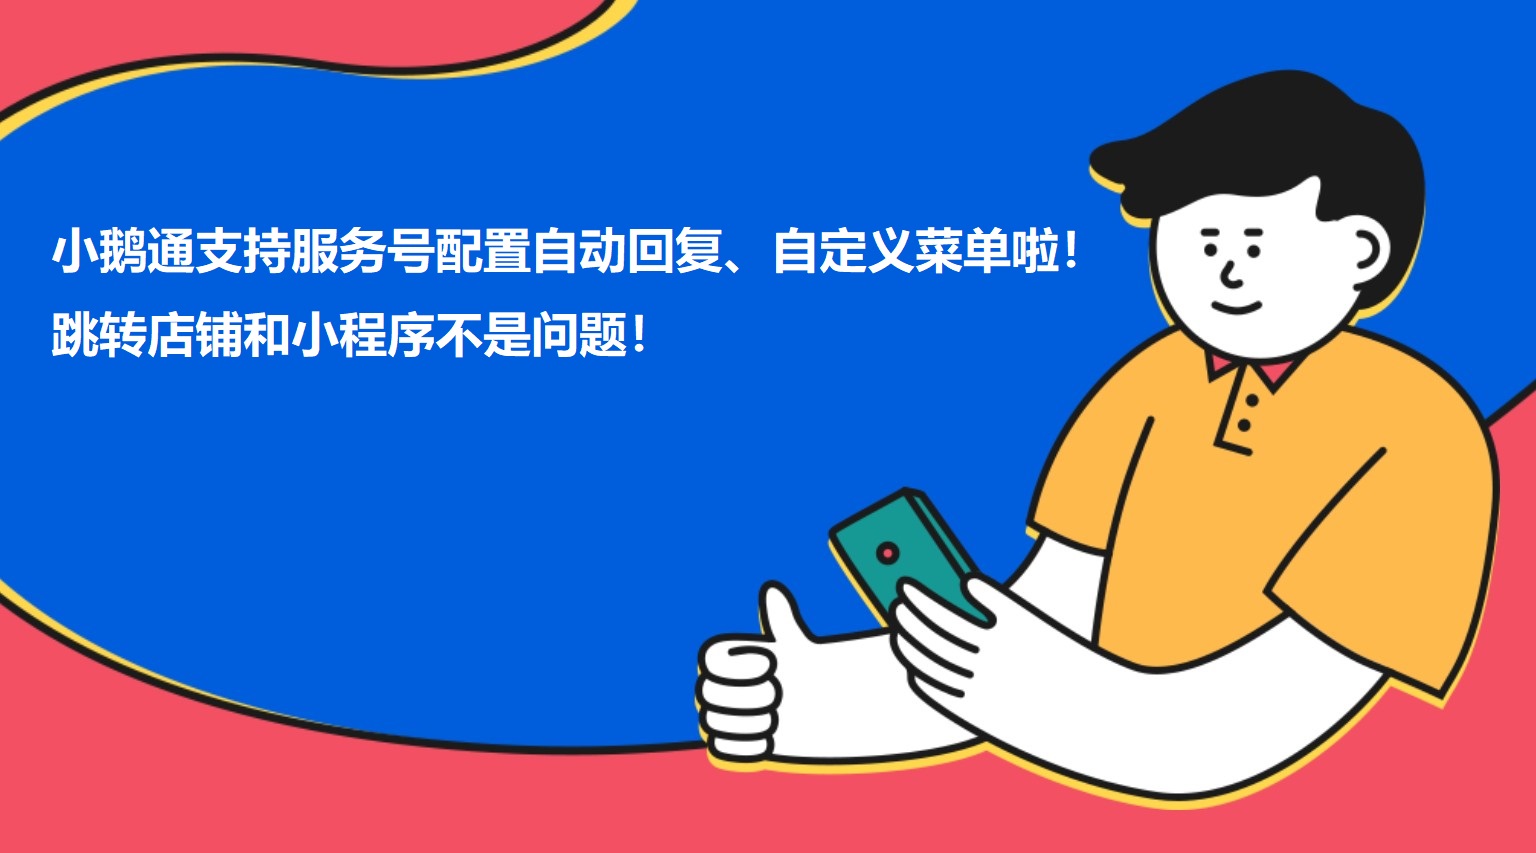 安图小鹅通支持服务号配置自动回复、自定义菜单啦！跳转店铺和小程序不是问题！